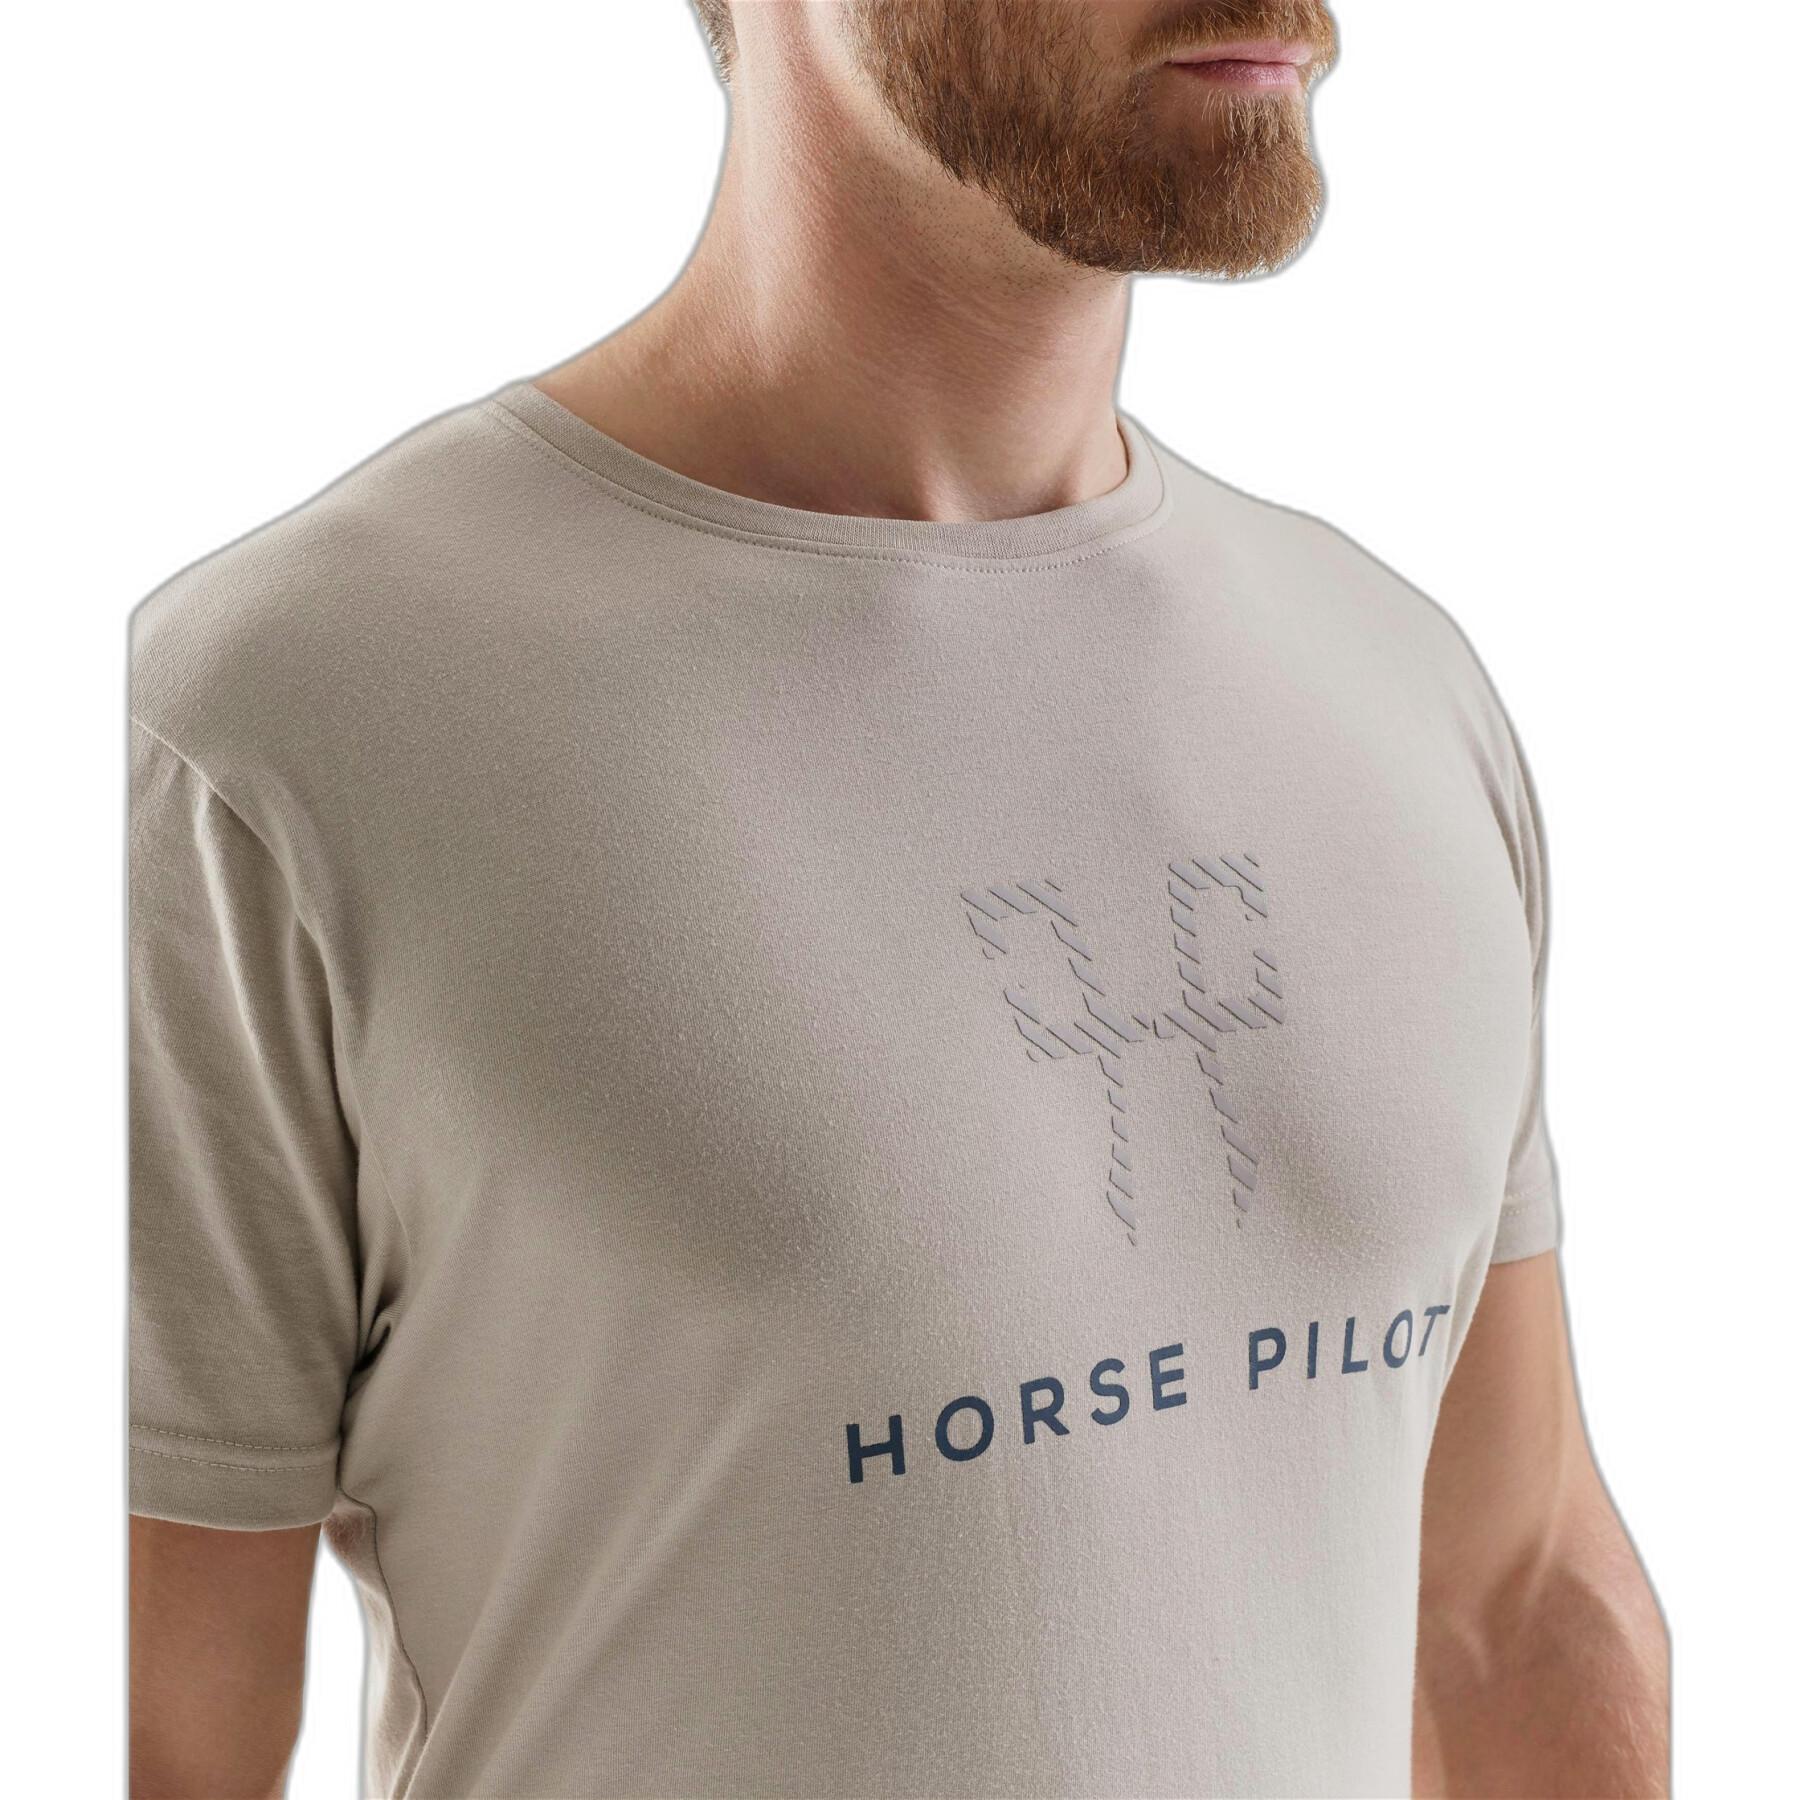 Camiseta Horse Pilot Team